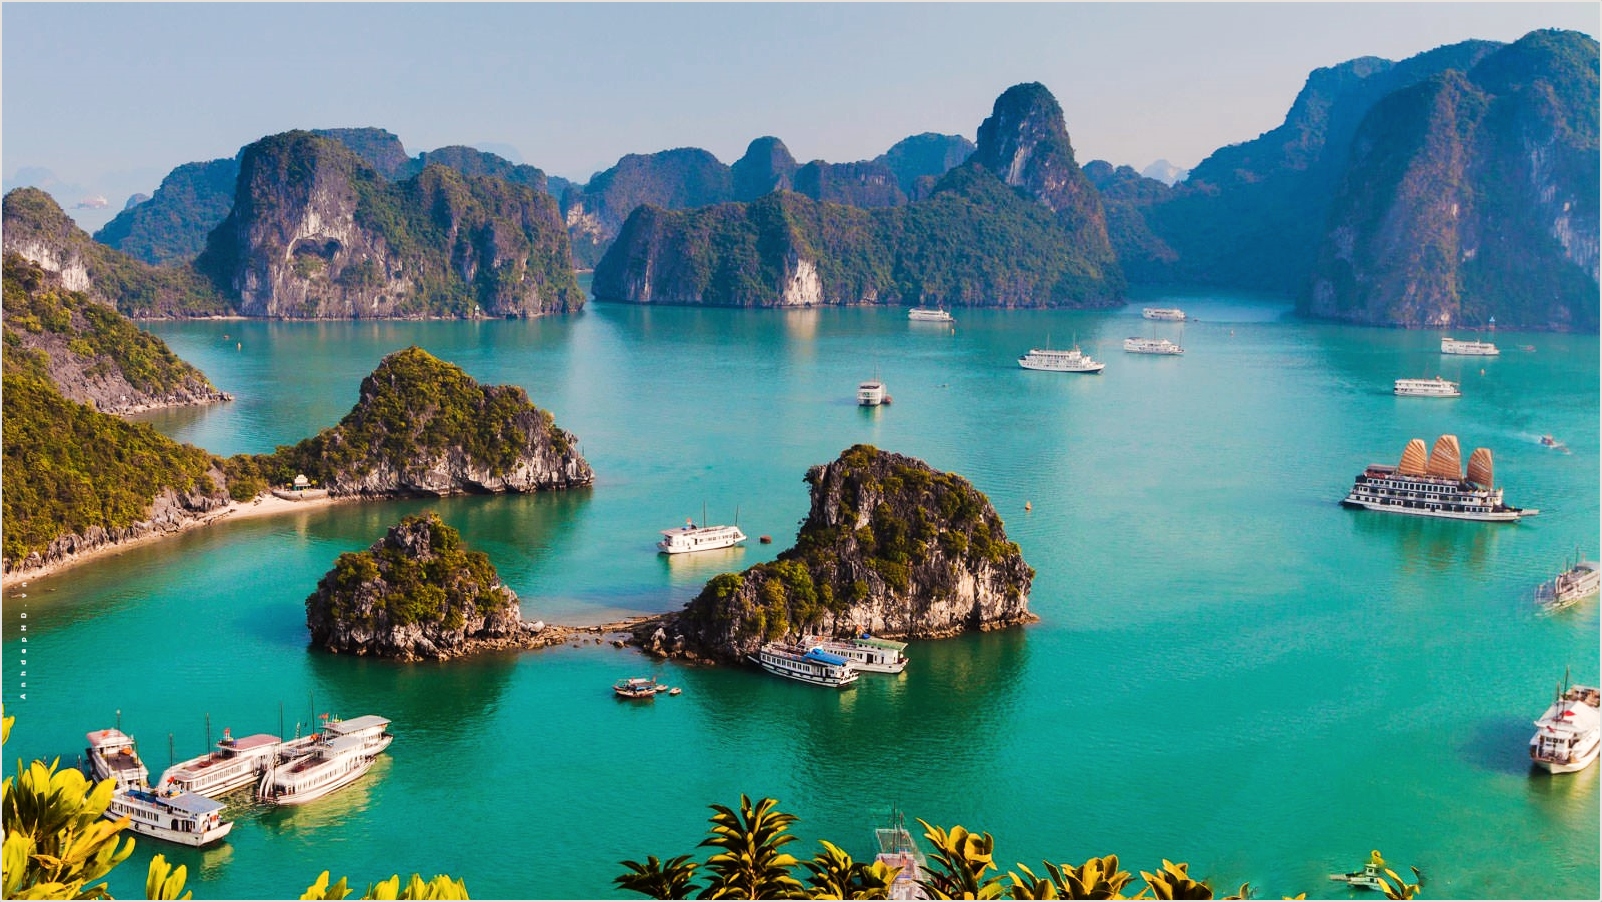 Cảnh đẹp hùng vĩ của quê hương sẽ khiến bạn thổn thức và ngất ngây. Từ những đỉnh núi trùng điệp đến những con sông hùng vỹ và những bãi biển trải dài tuyệt đẹp, hãy đắm chìm trong tất cả những cảnh sắc tuyệt vời của Việt Nam.